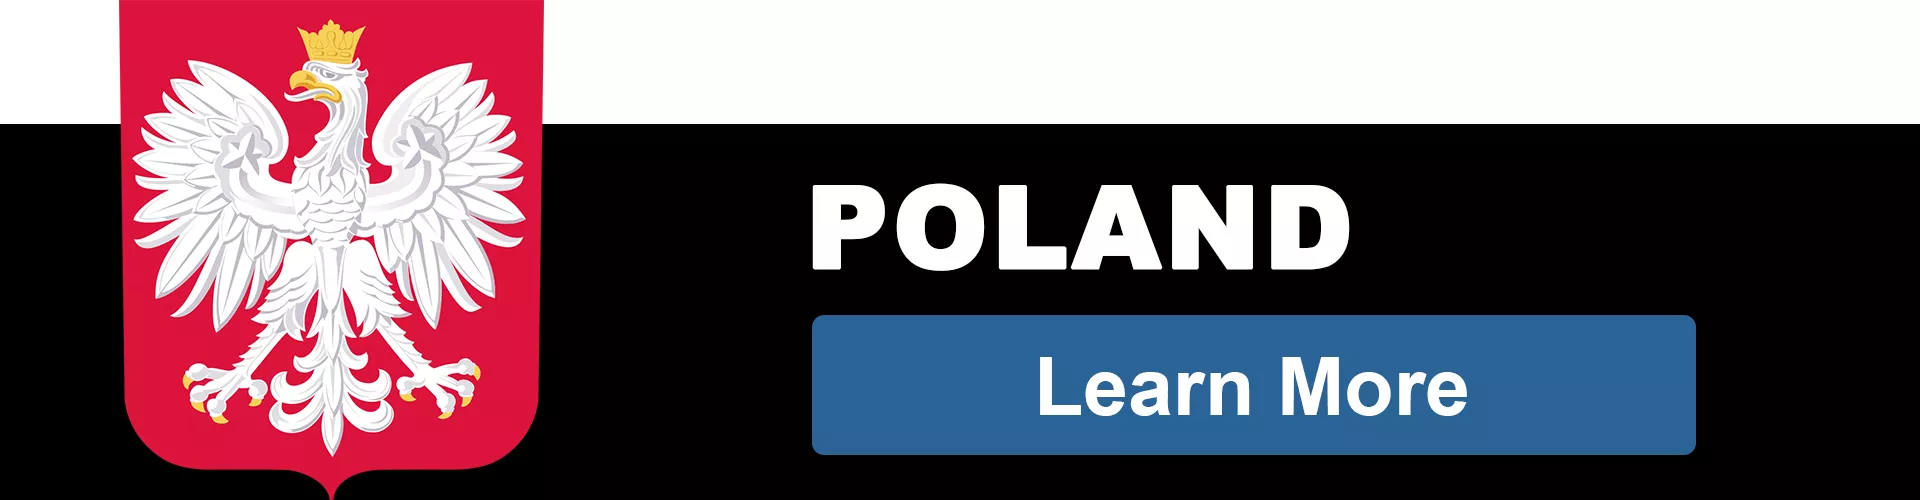 POLAND TEAM - bestsoccerstore